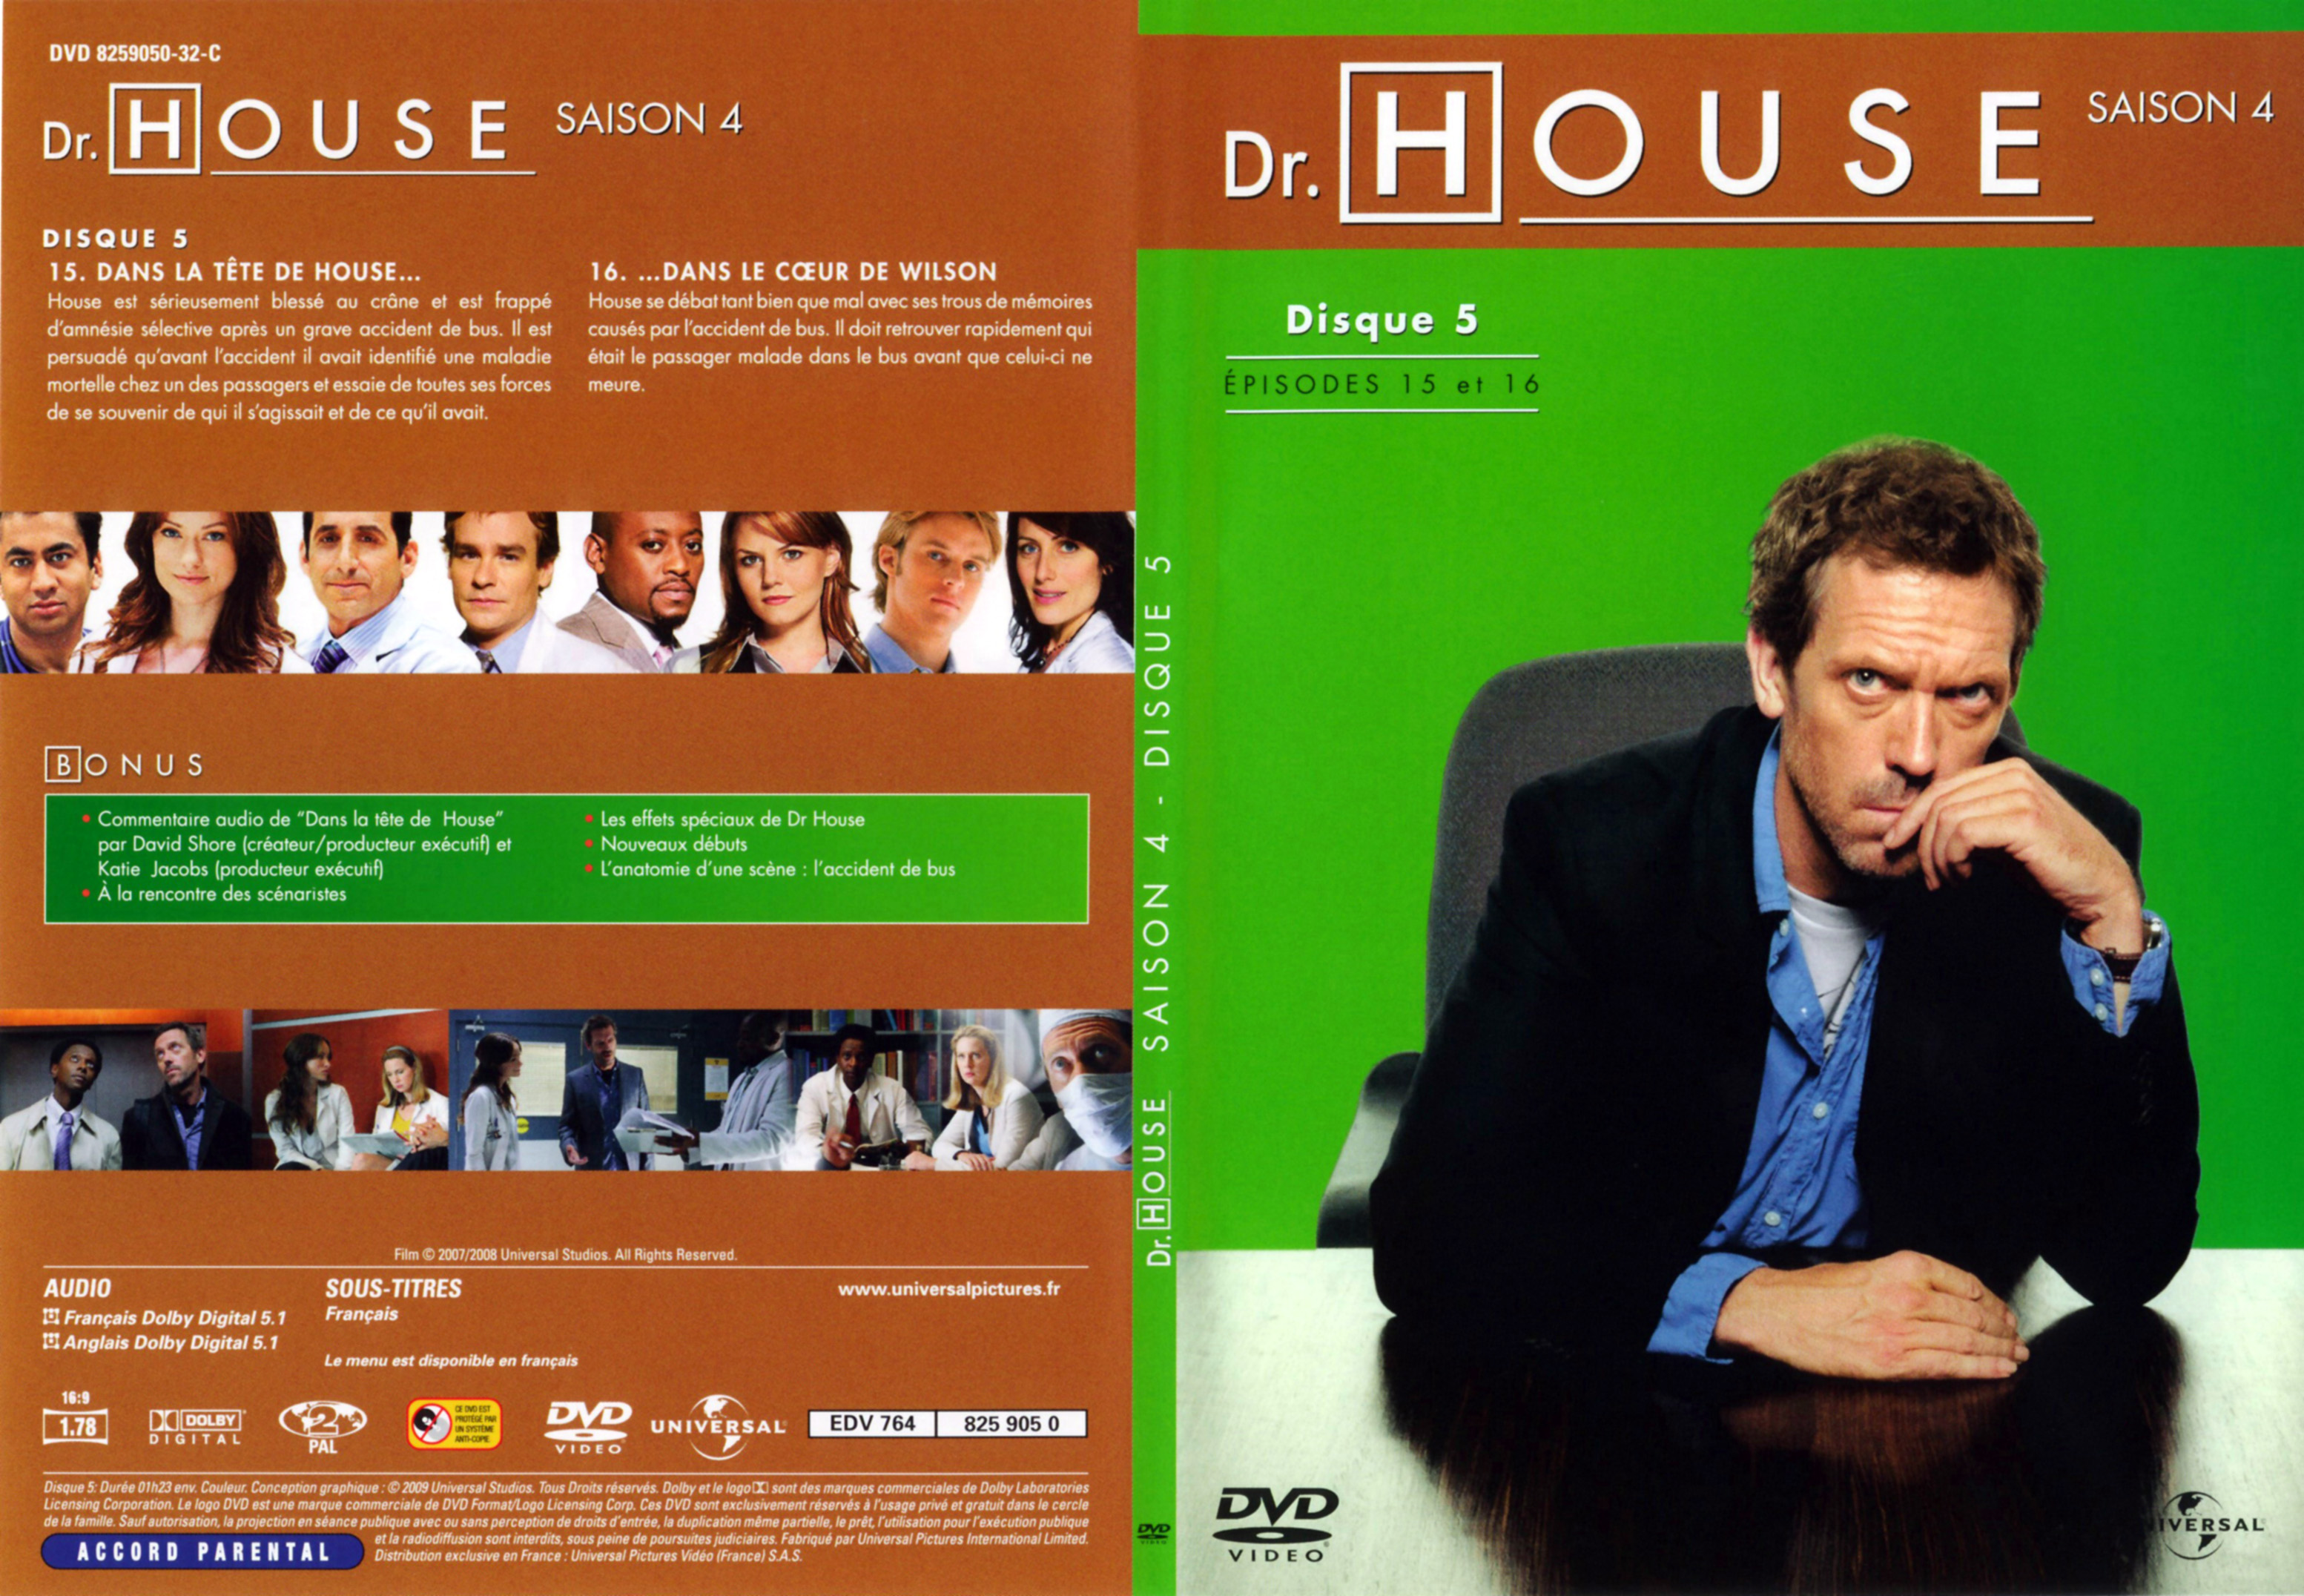 Jaquette DVD Dr House Saison 4 DVD 3